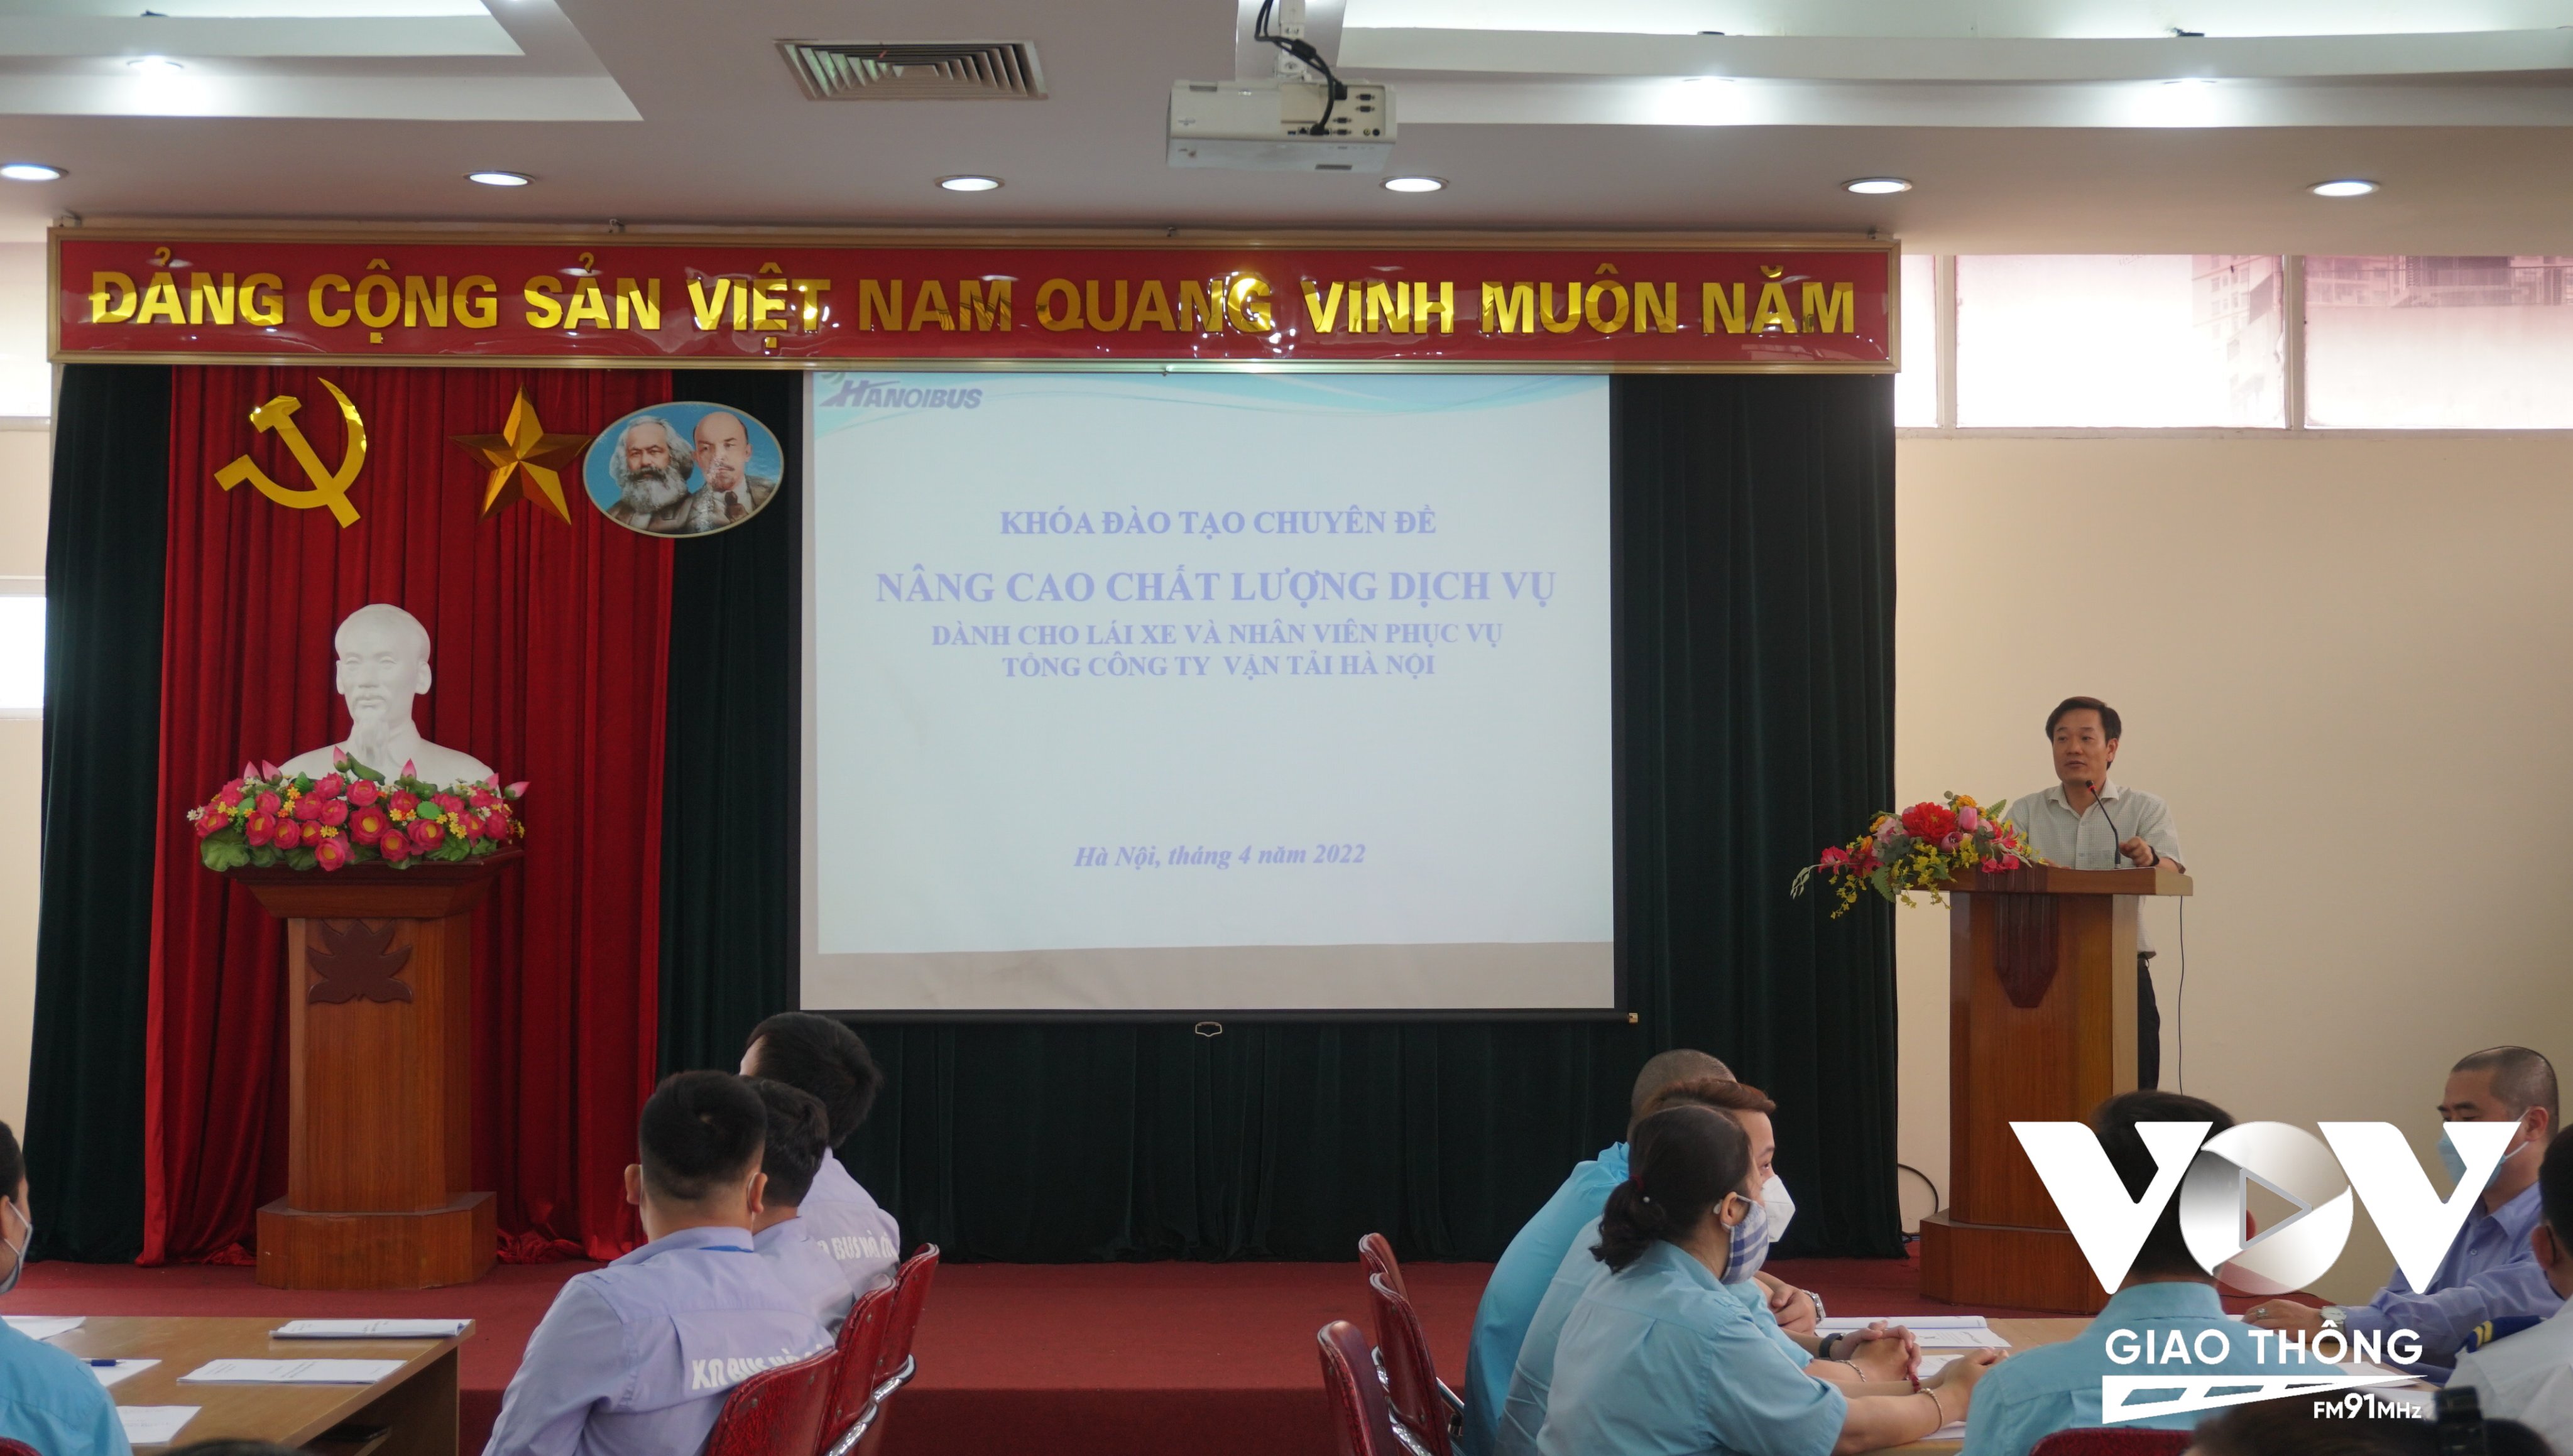 Ông Nguyễn Thủy, Phó Tổng giám đốc Transerco phát biểu khai mạc khóa học.